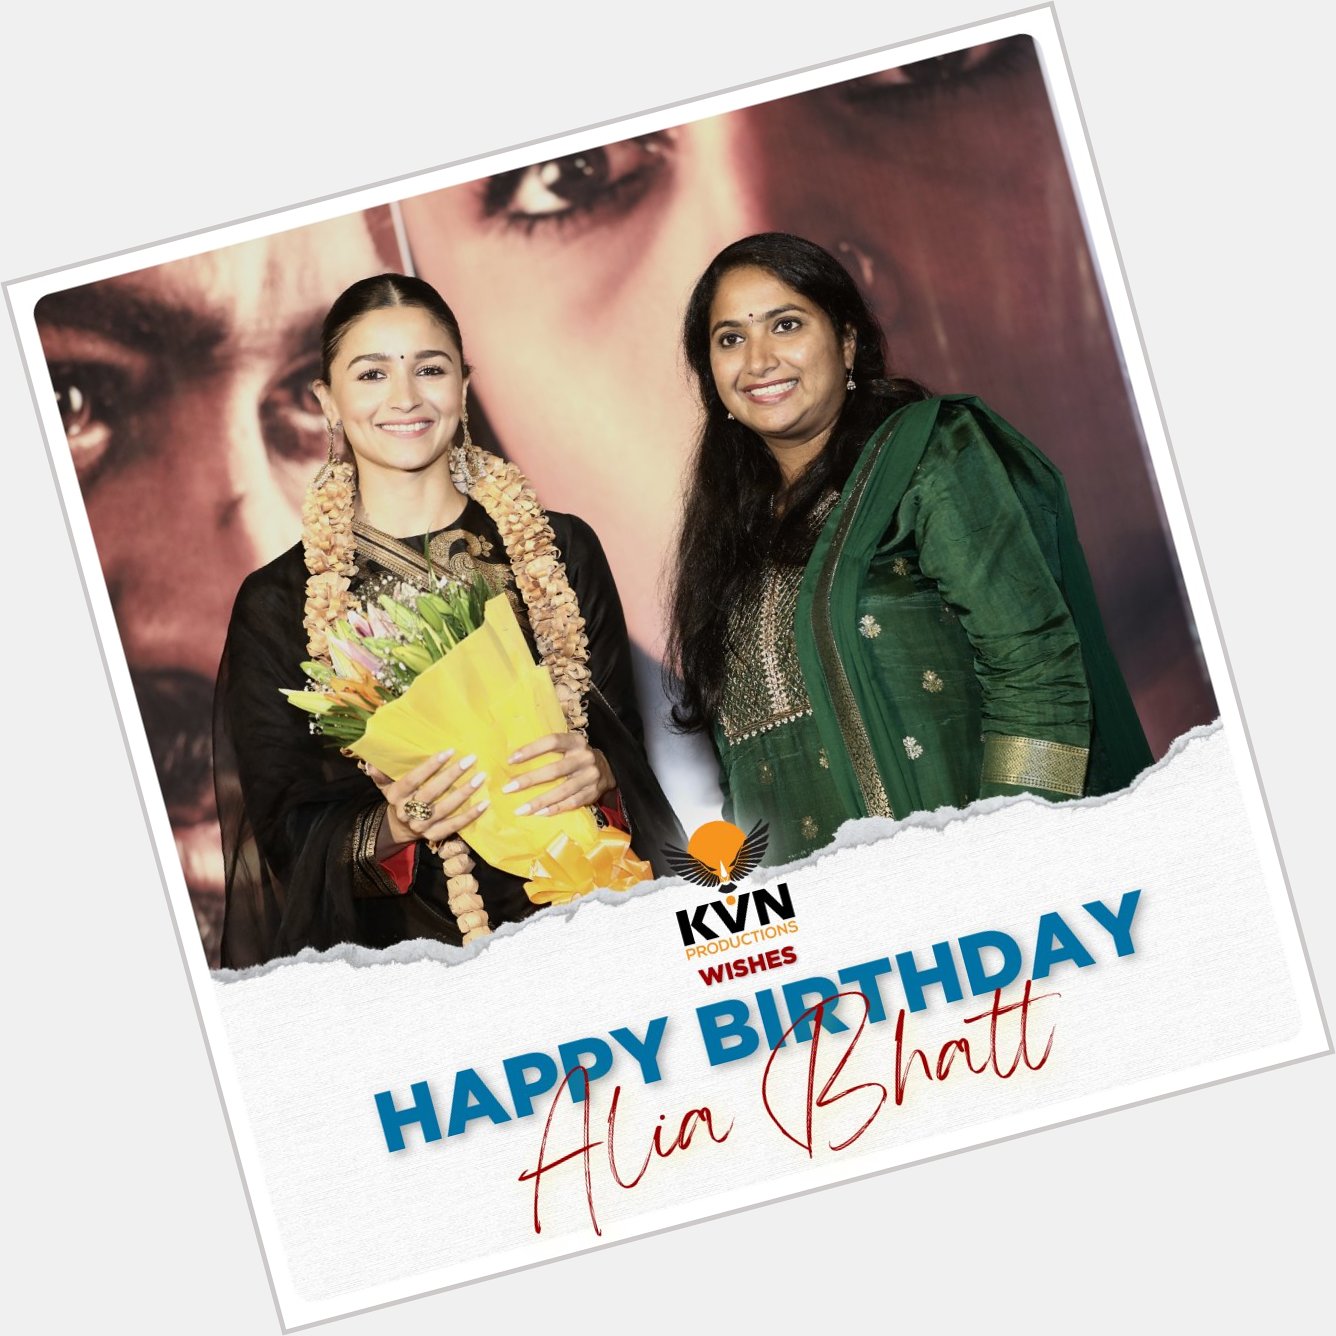 KVN Productions wishes a very Happy Birthday to Alia Bhatt! 